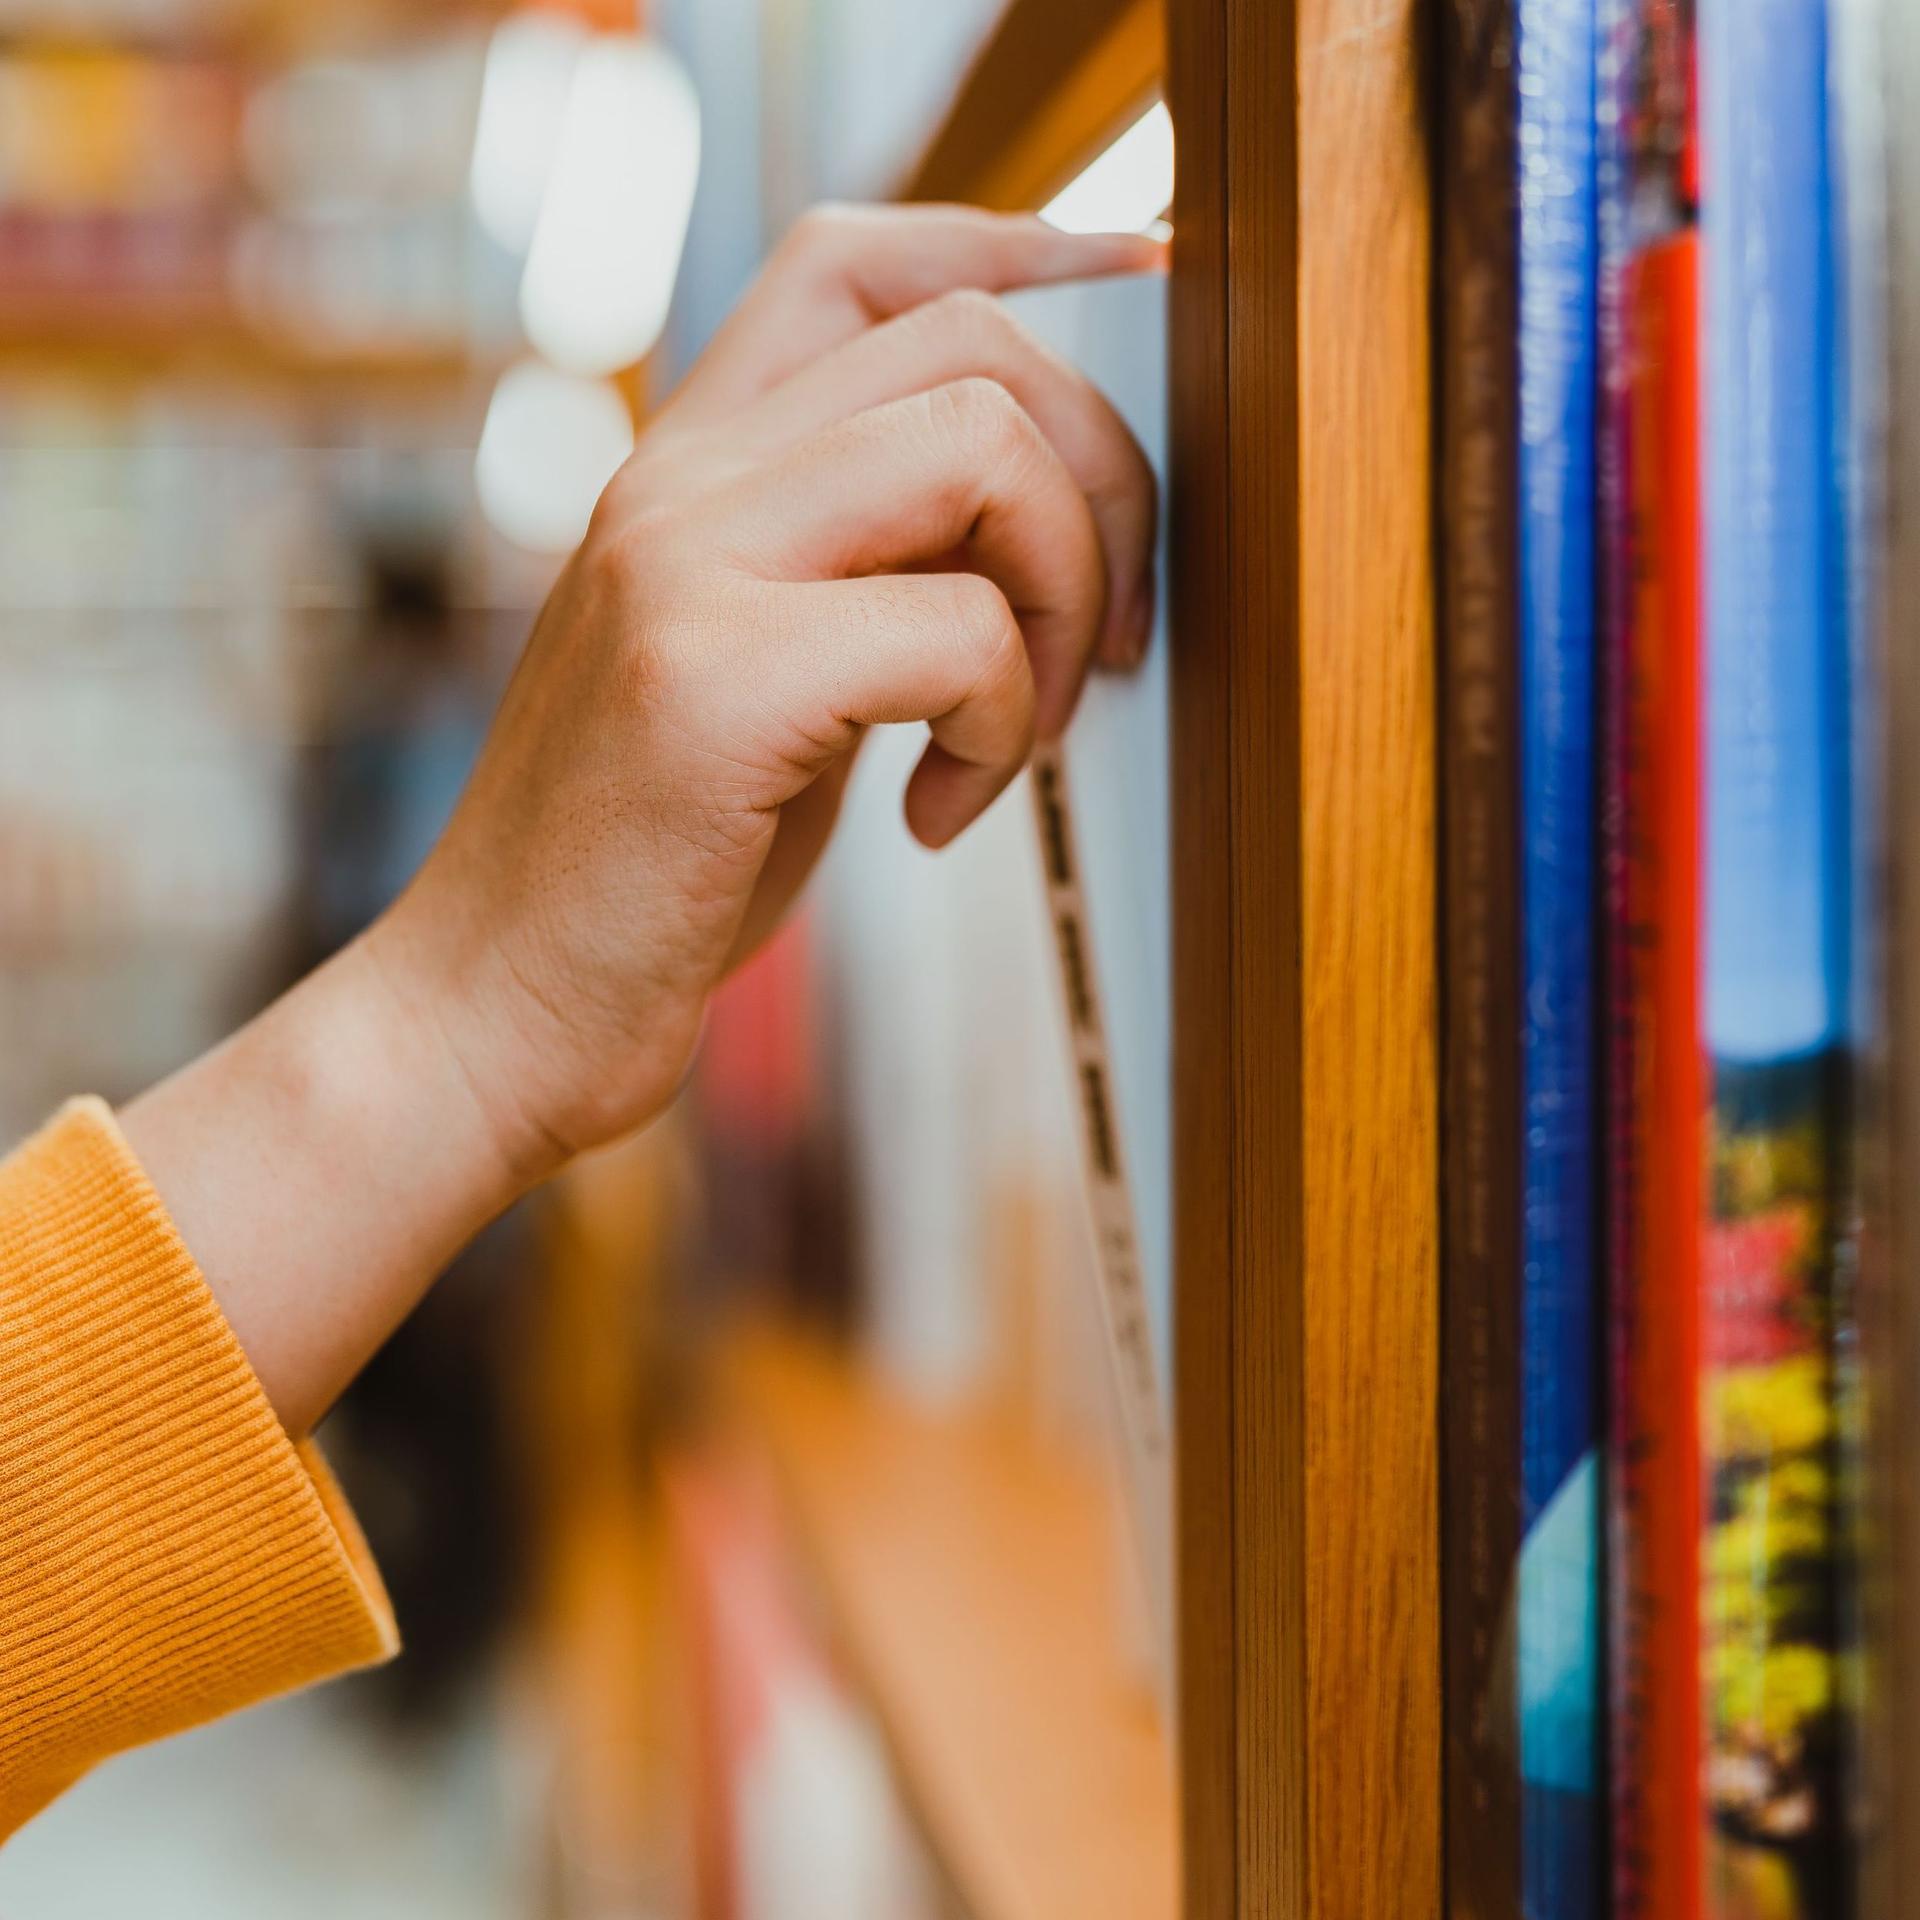 Seitliche Nahaufnahme von einem Arm mit orange farbenen Pullover. Die Hand zieht ein Buch aus einem Bücherregal.